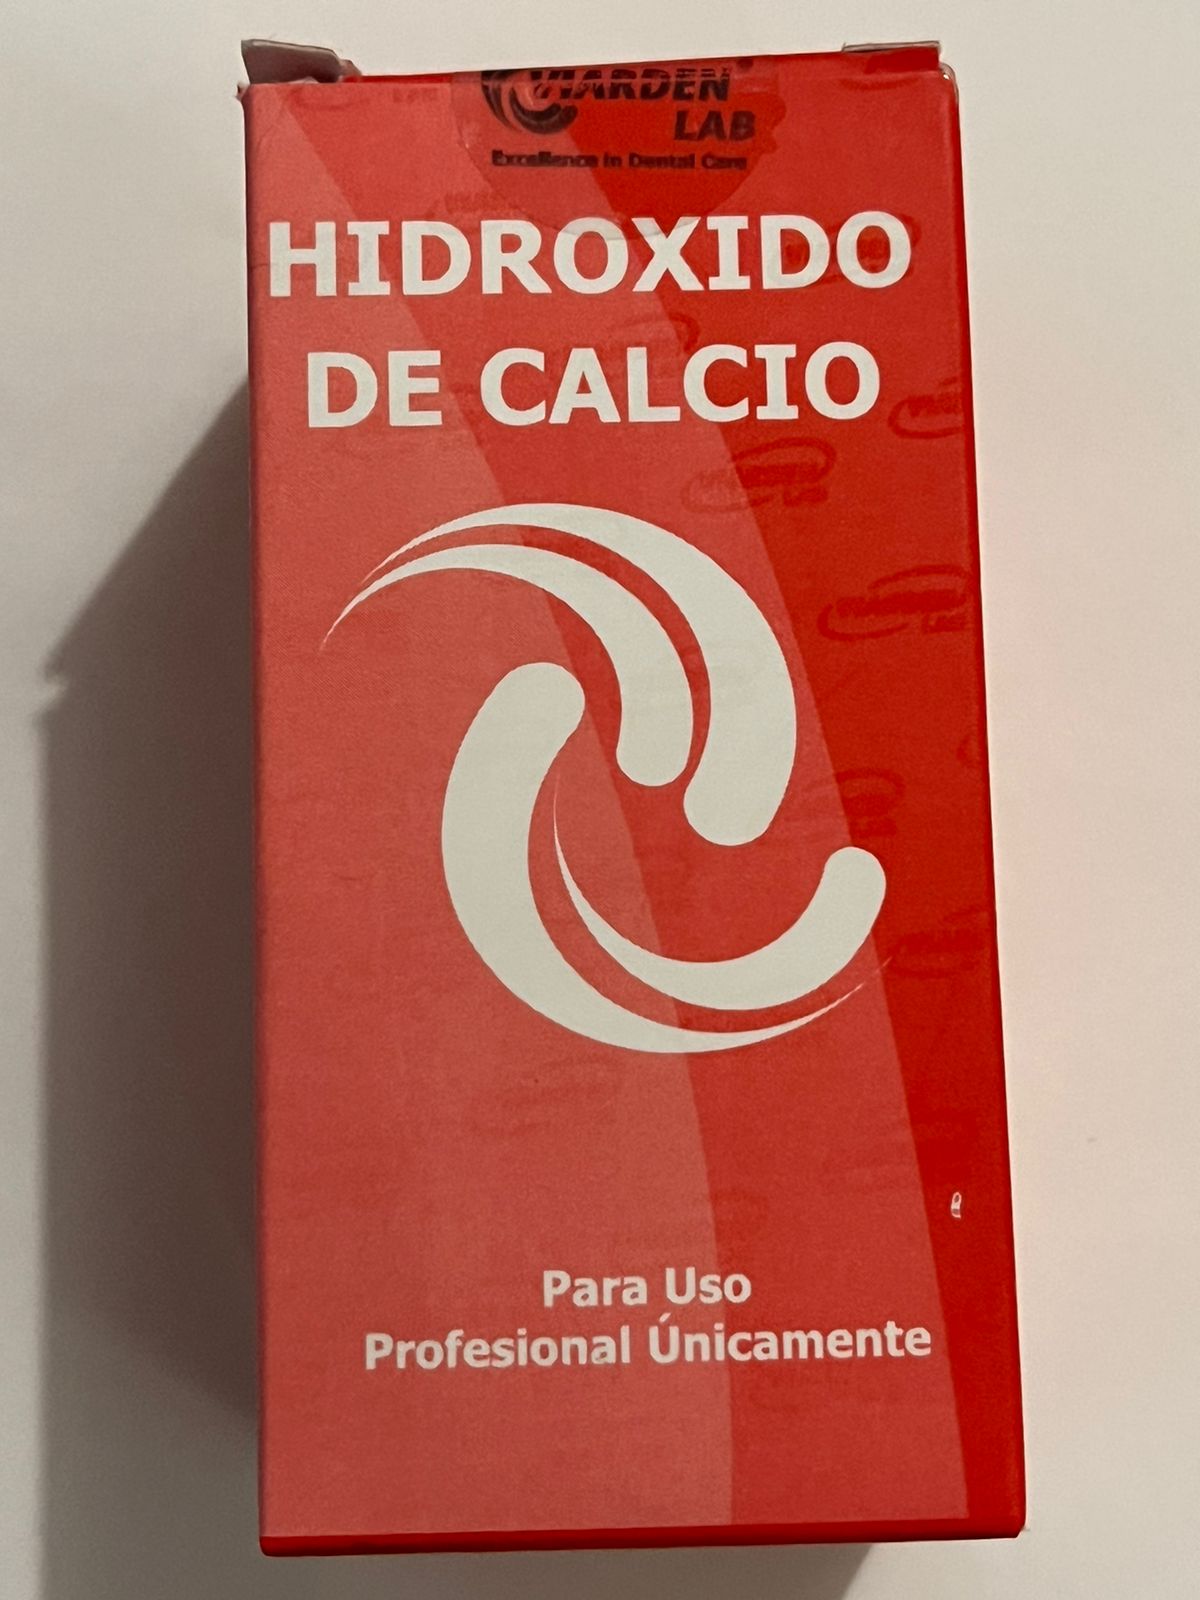 Hidroxido de calcio quimicamente puro viarden